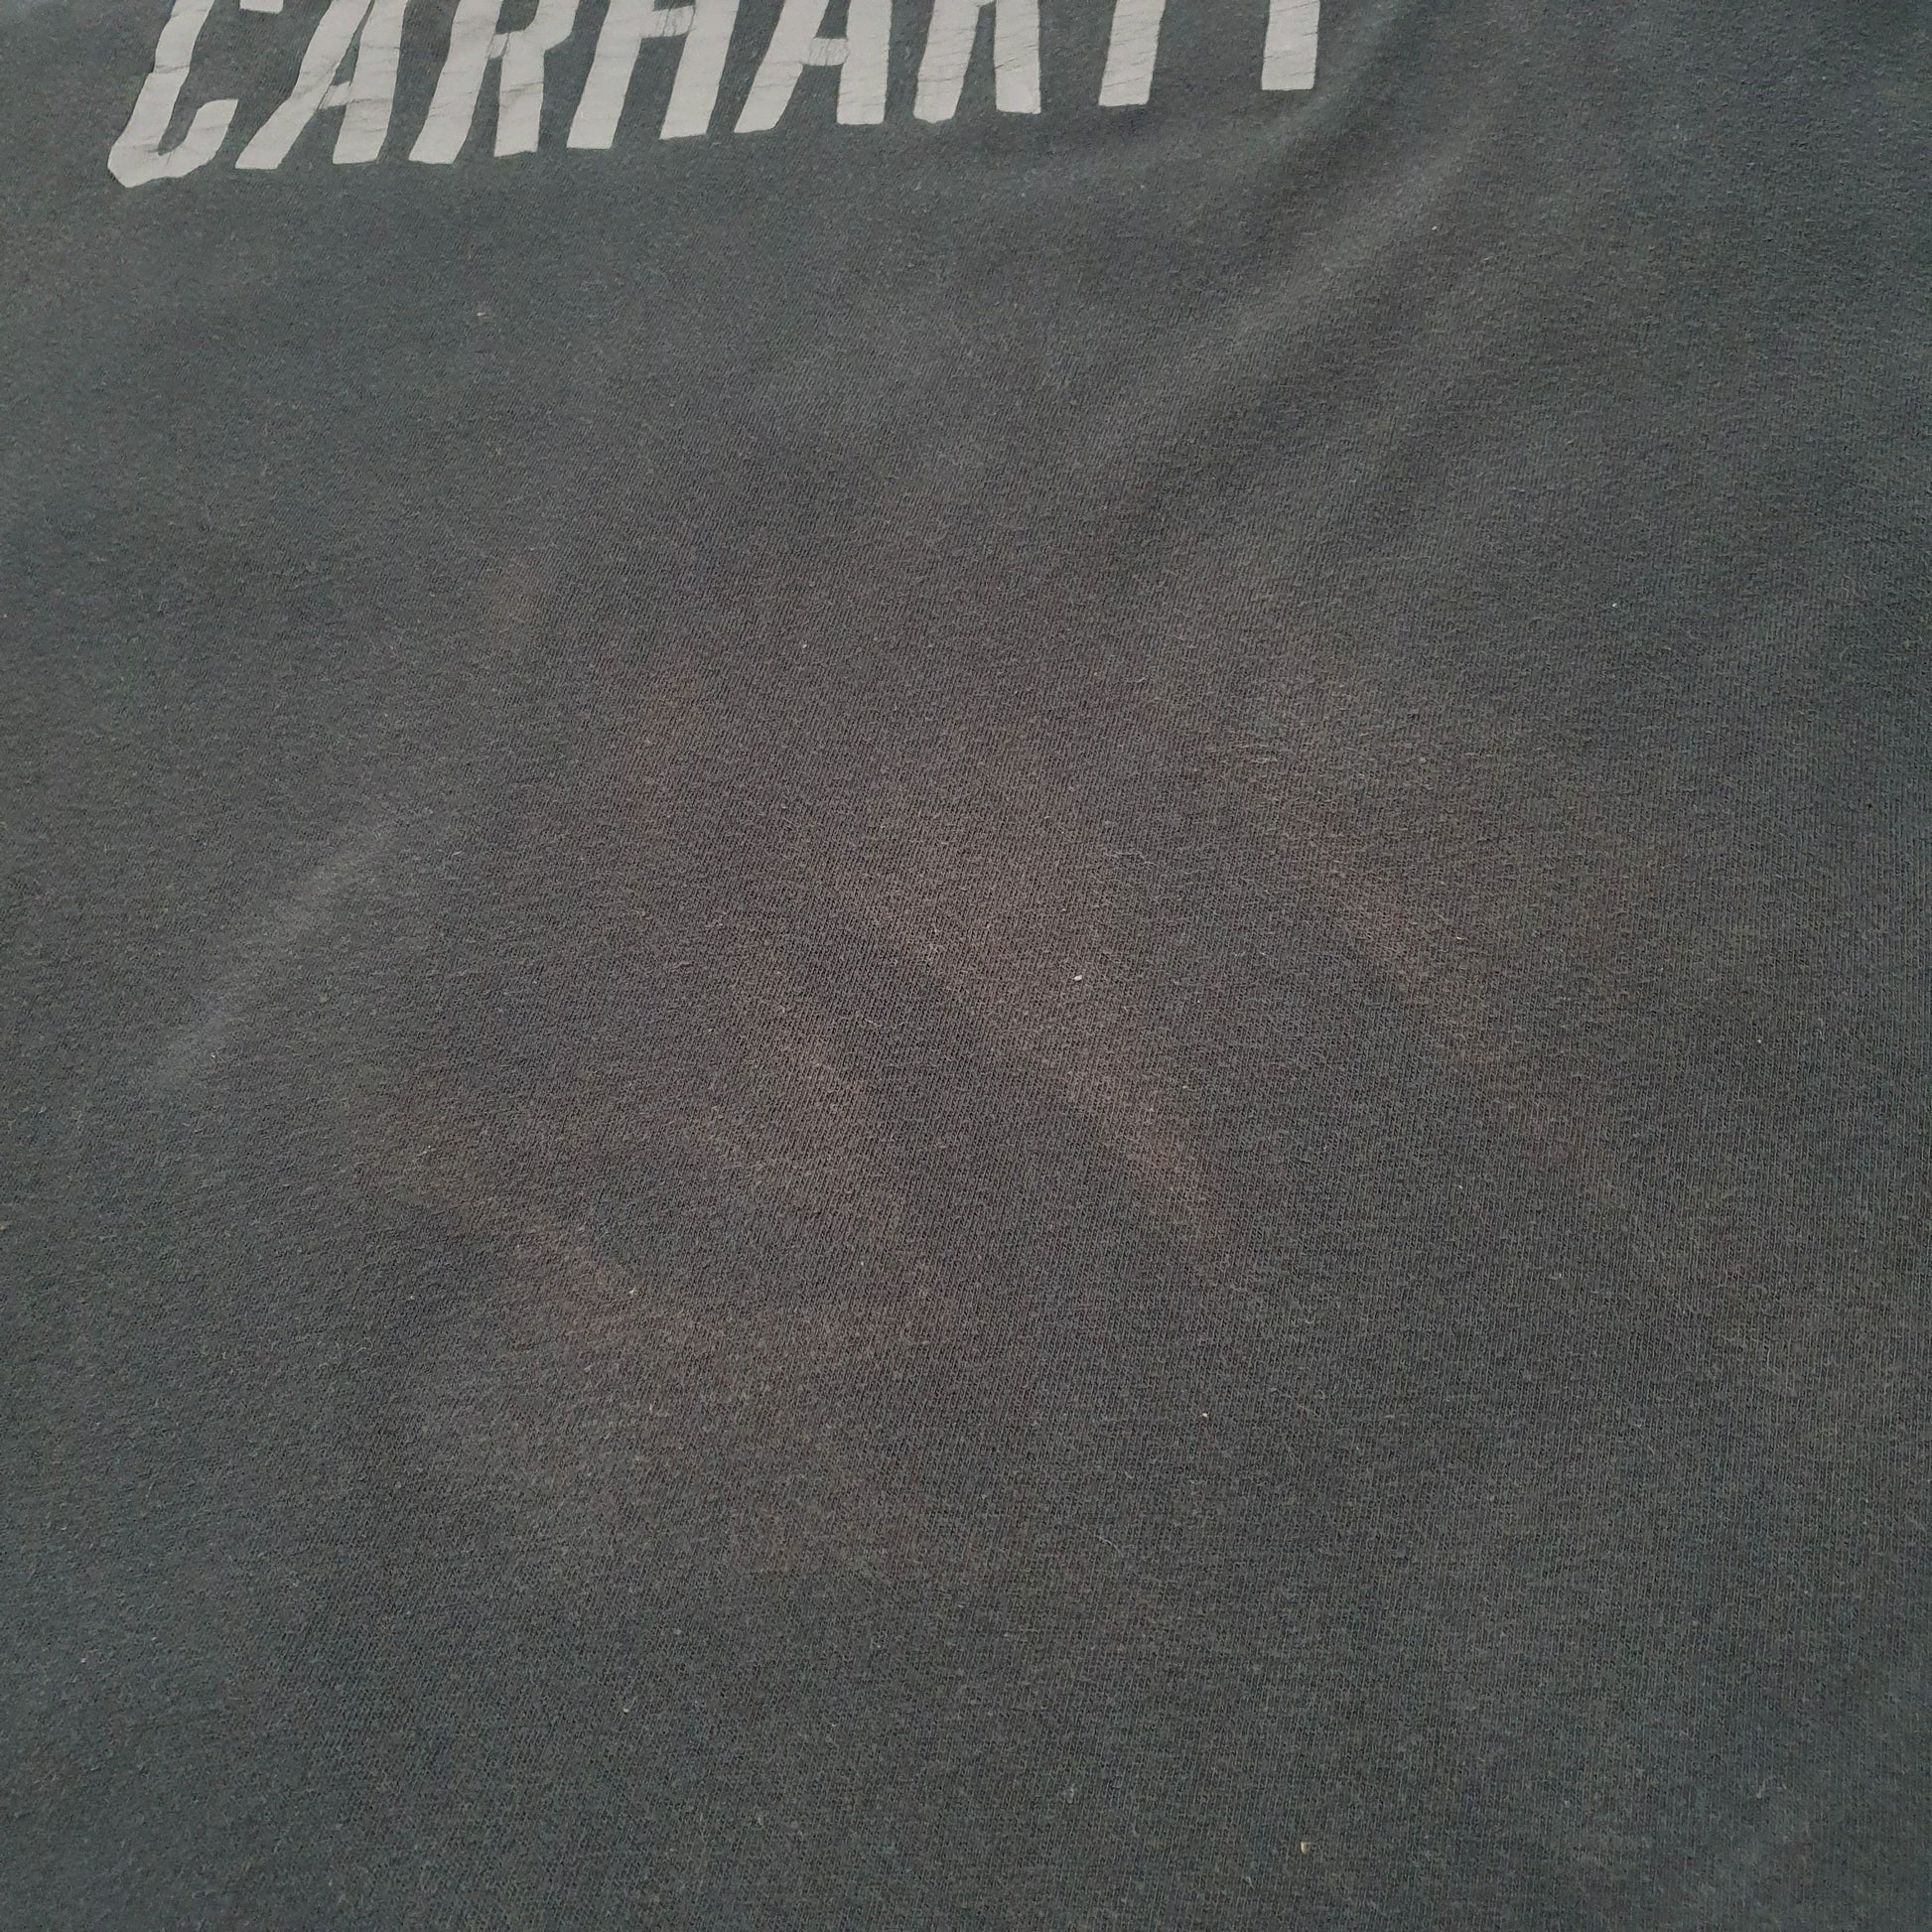 Mens Black Carhartt Work Wear Spellout Short Sleeve T Shirt